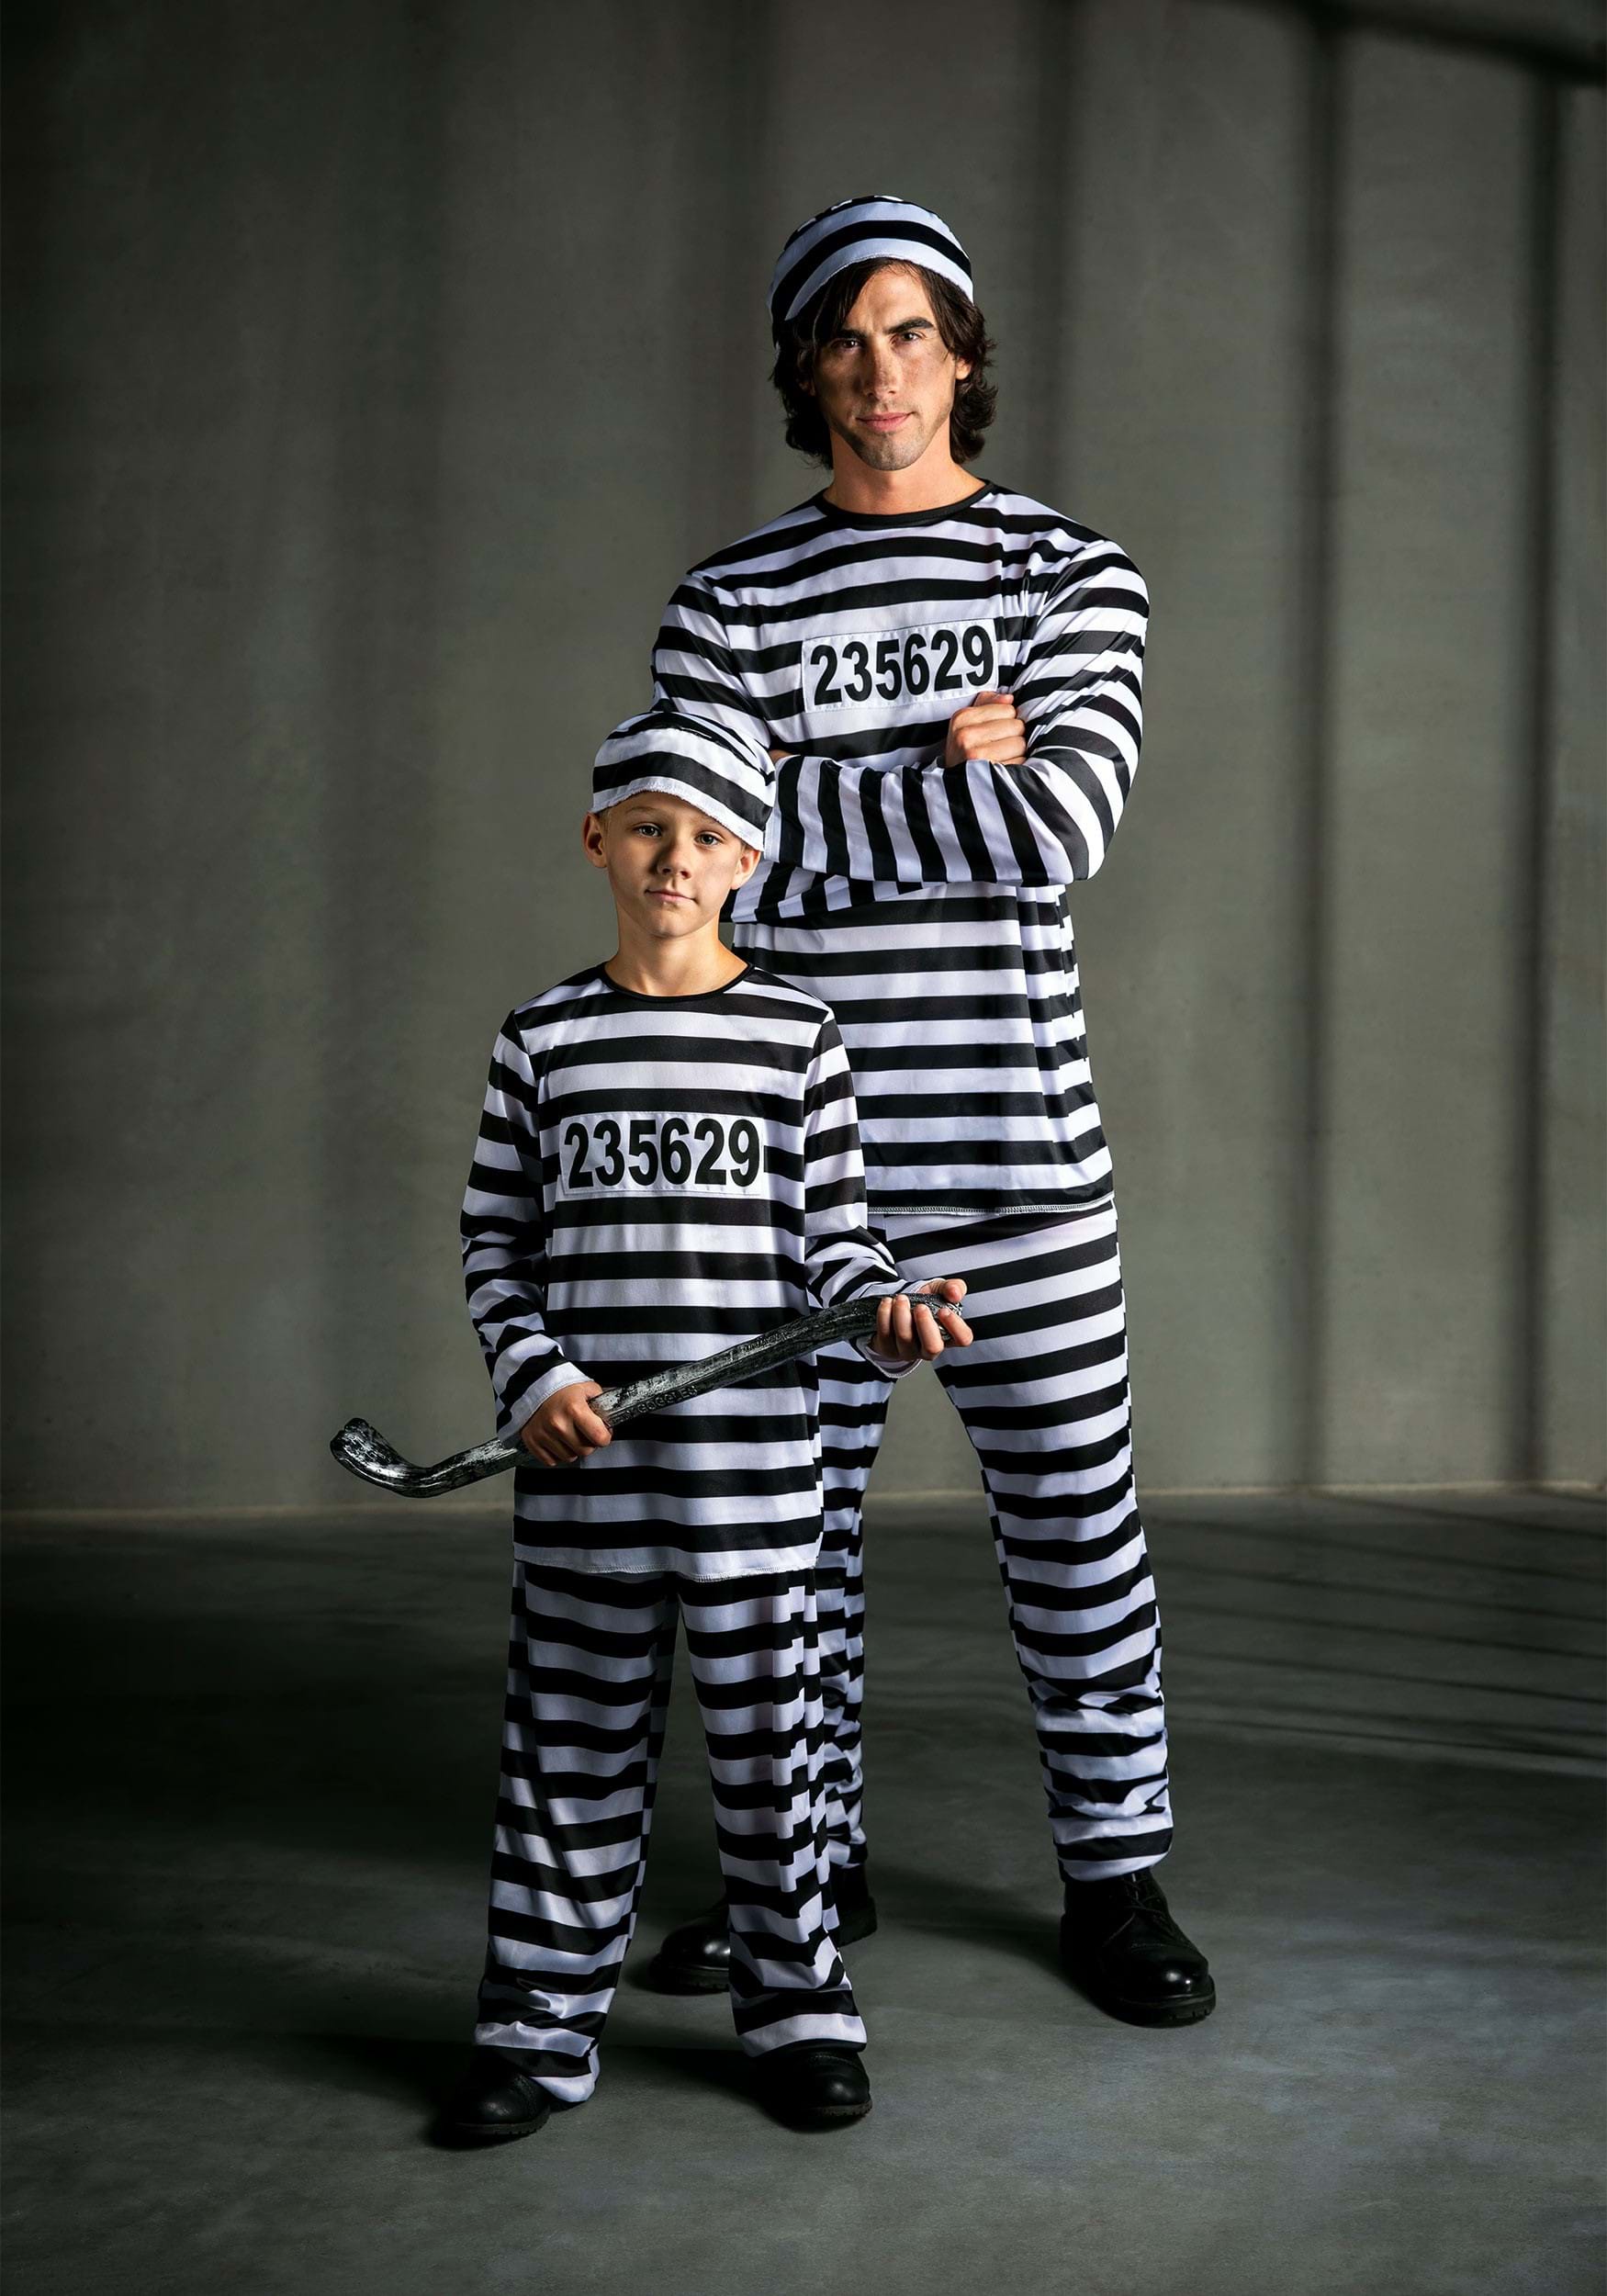 Boys Prisoner Costume